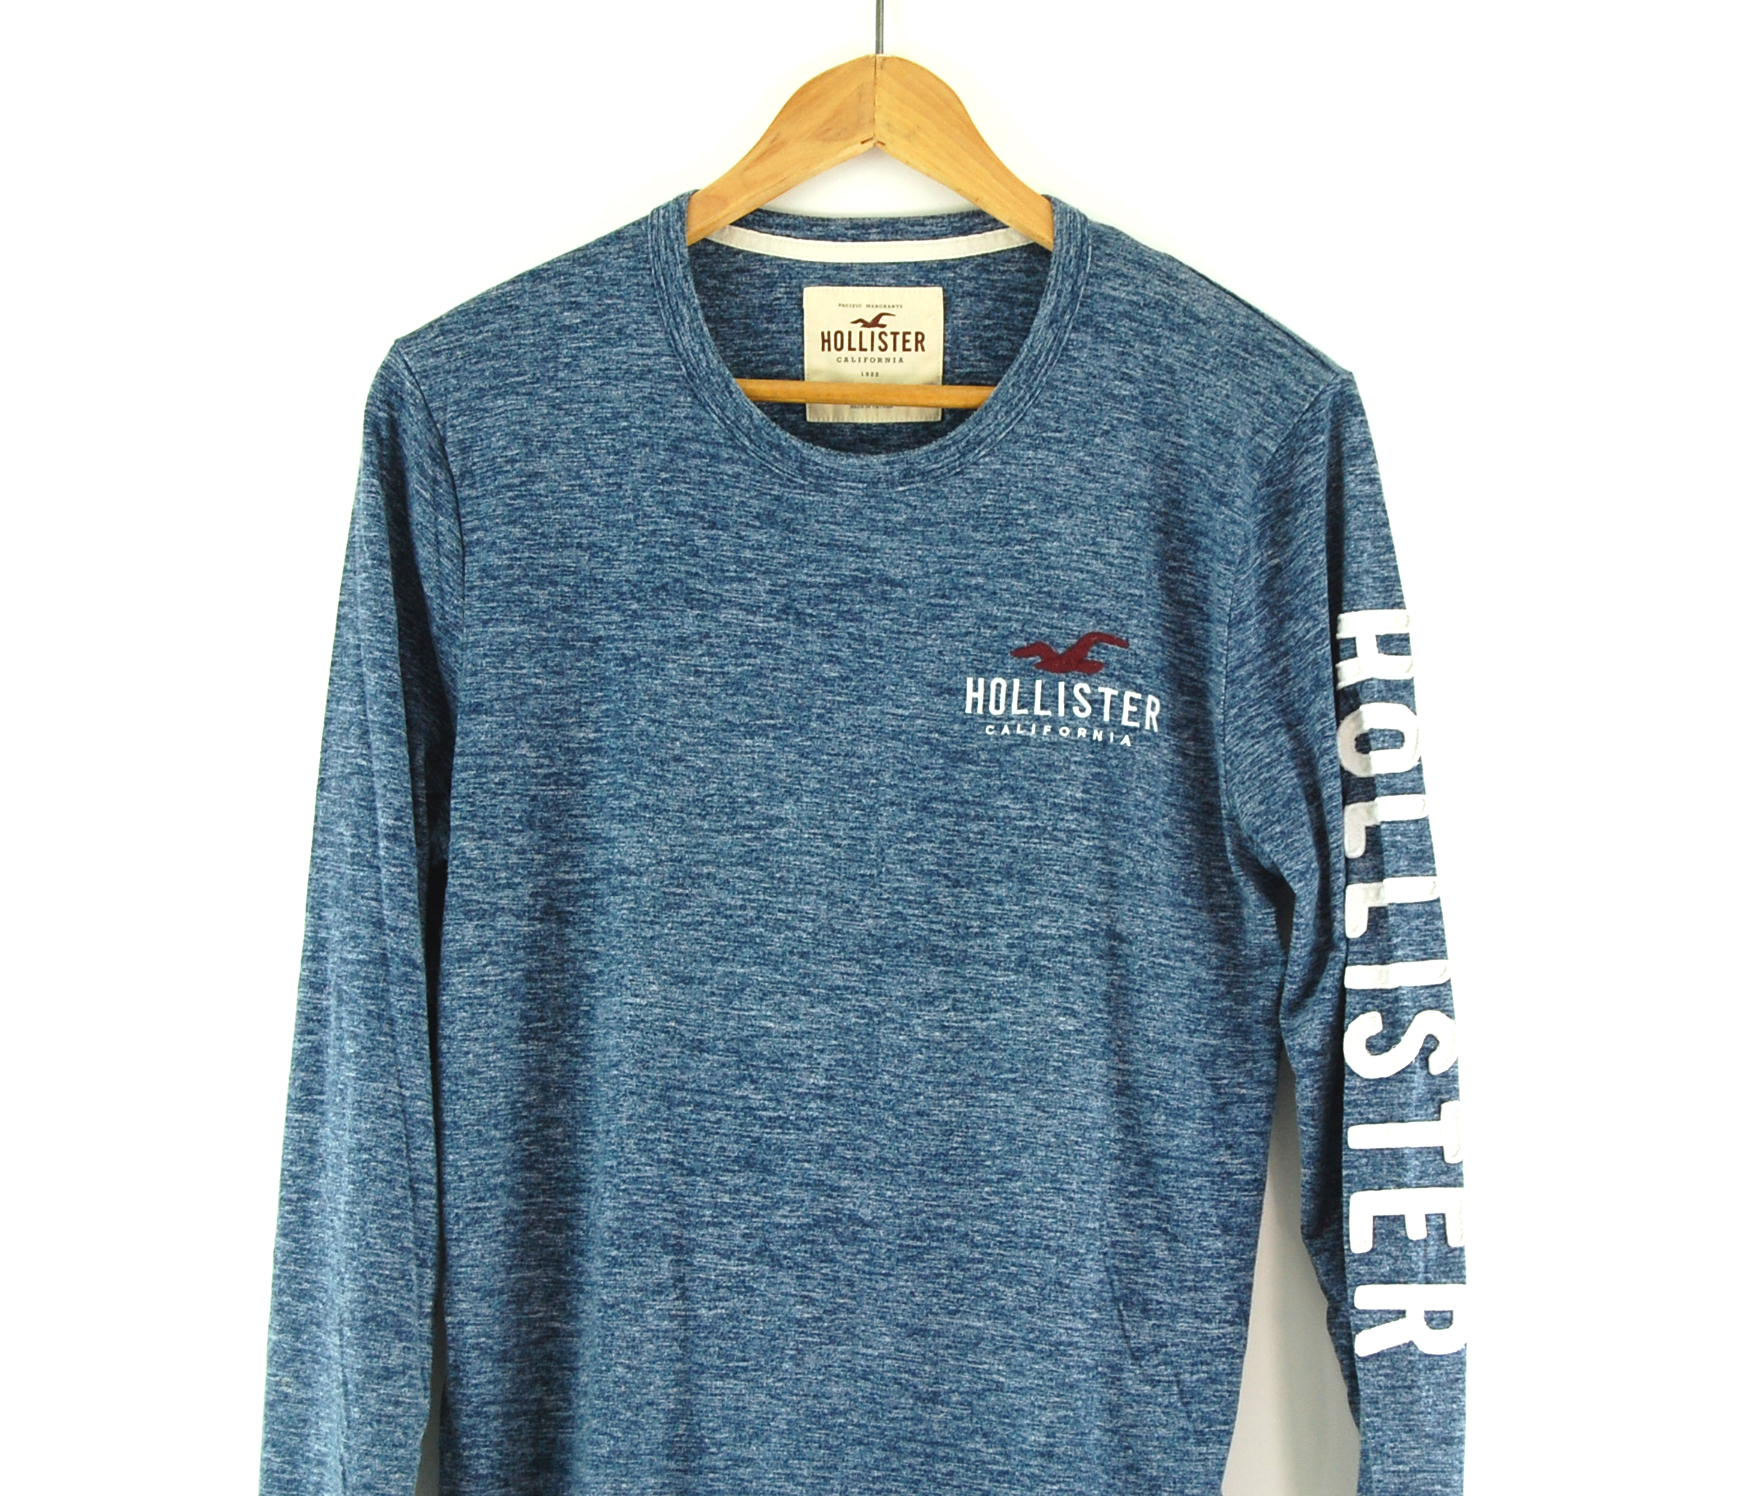 Hollister long sleeved t-shirt - UK L - Blue 17 Vintage Clothing